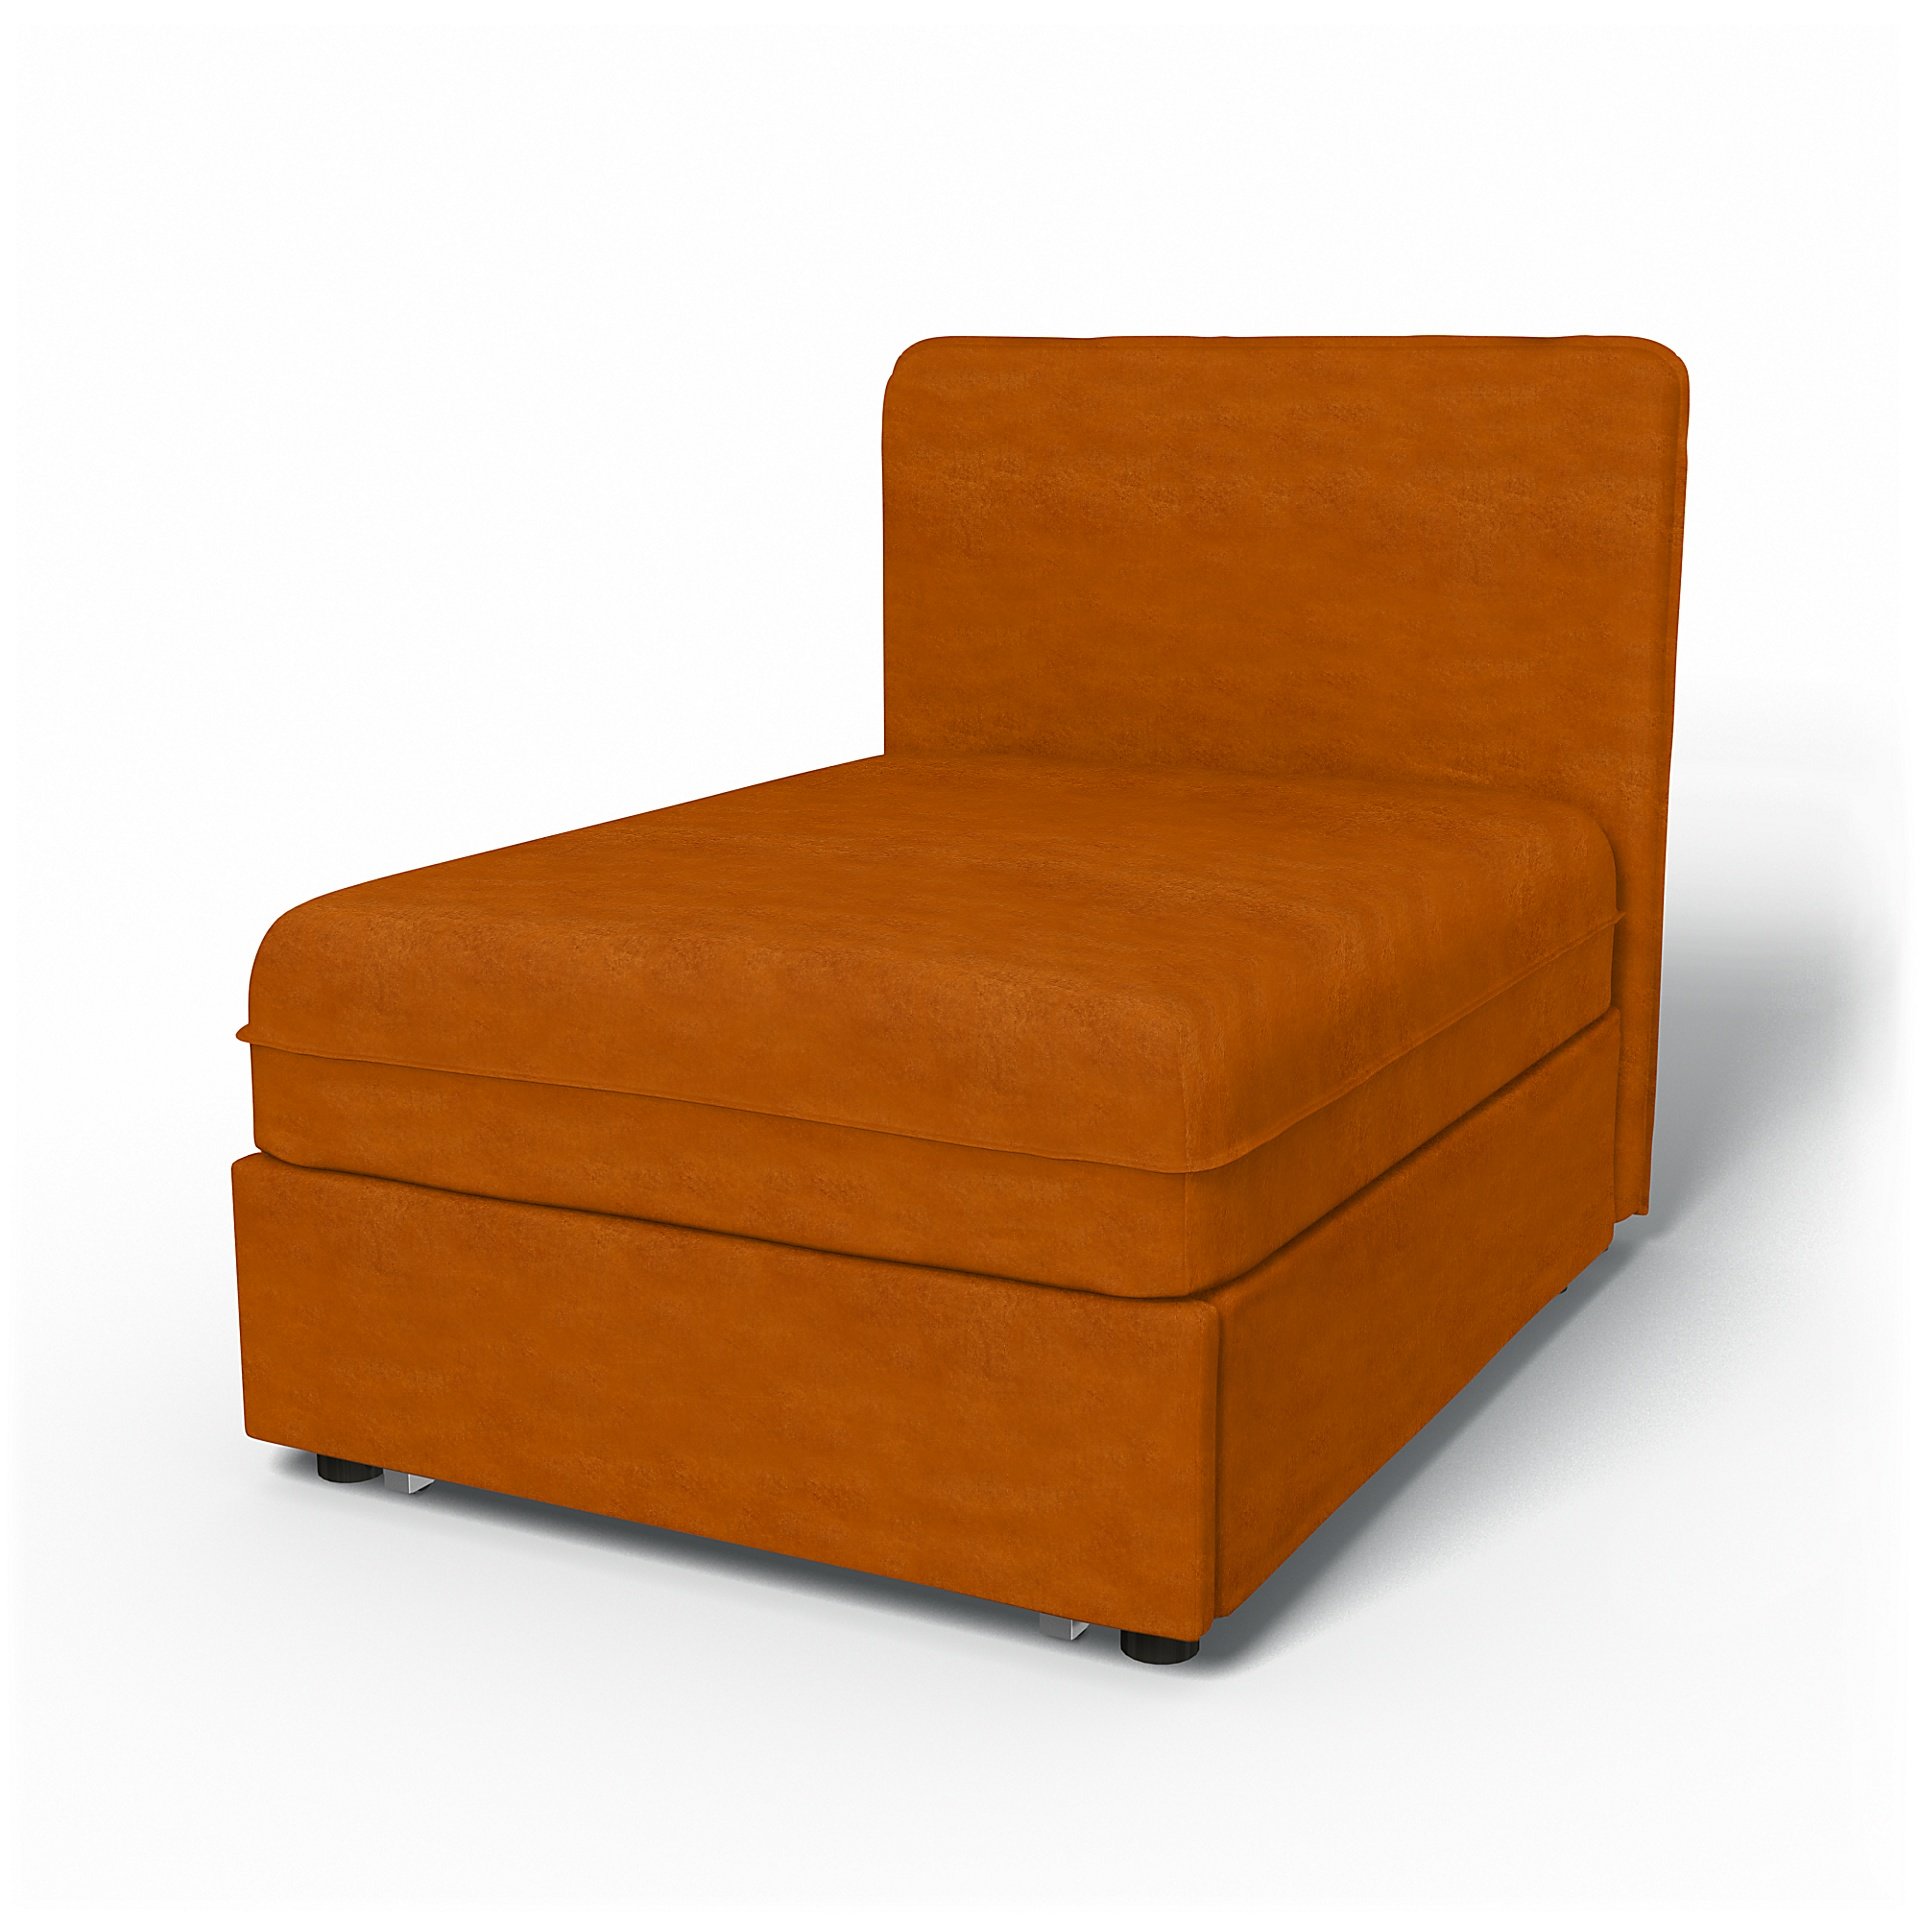 IKEA - Vallentuna Seat Module with Low Back Sofa Bed Cover 80x100 cm 32x39in, Cognac, Velvet - Bemz